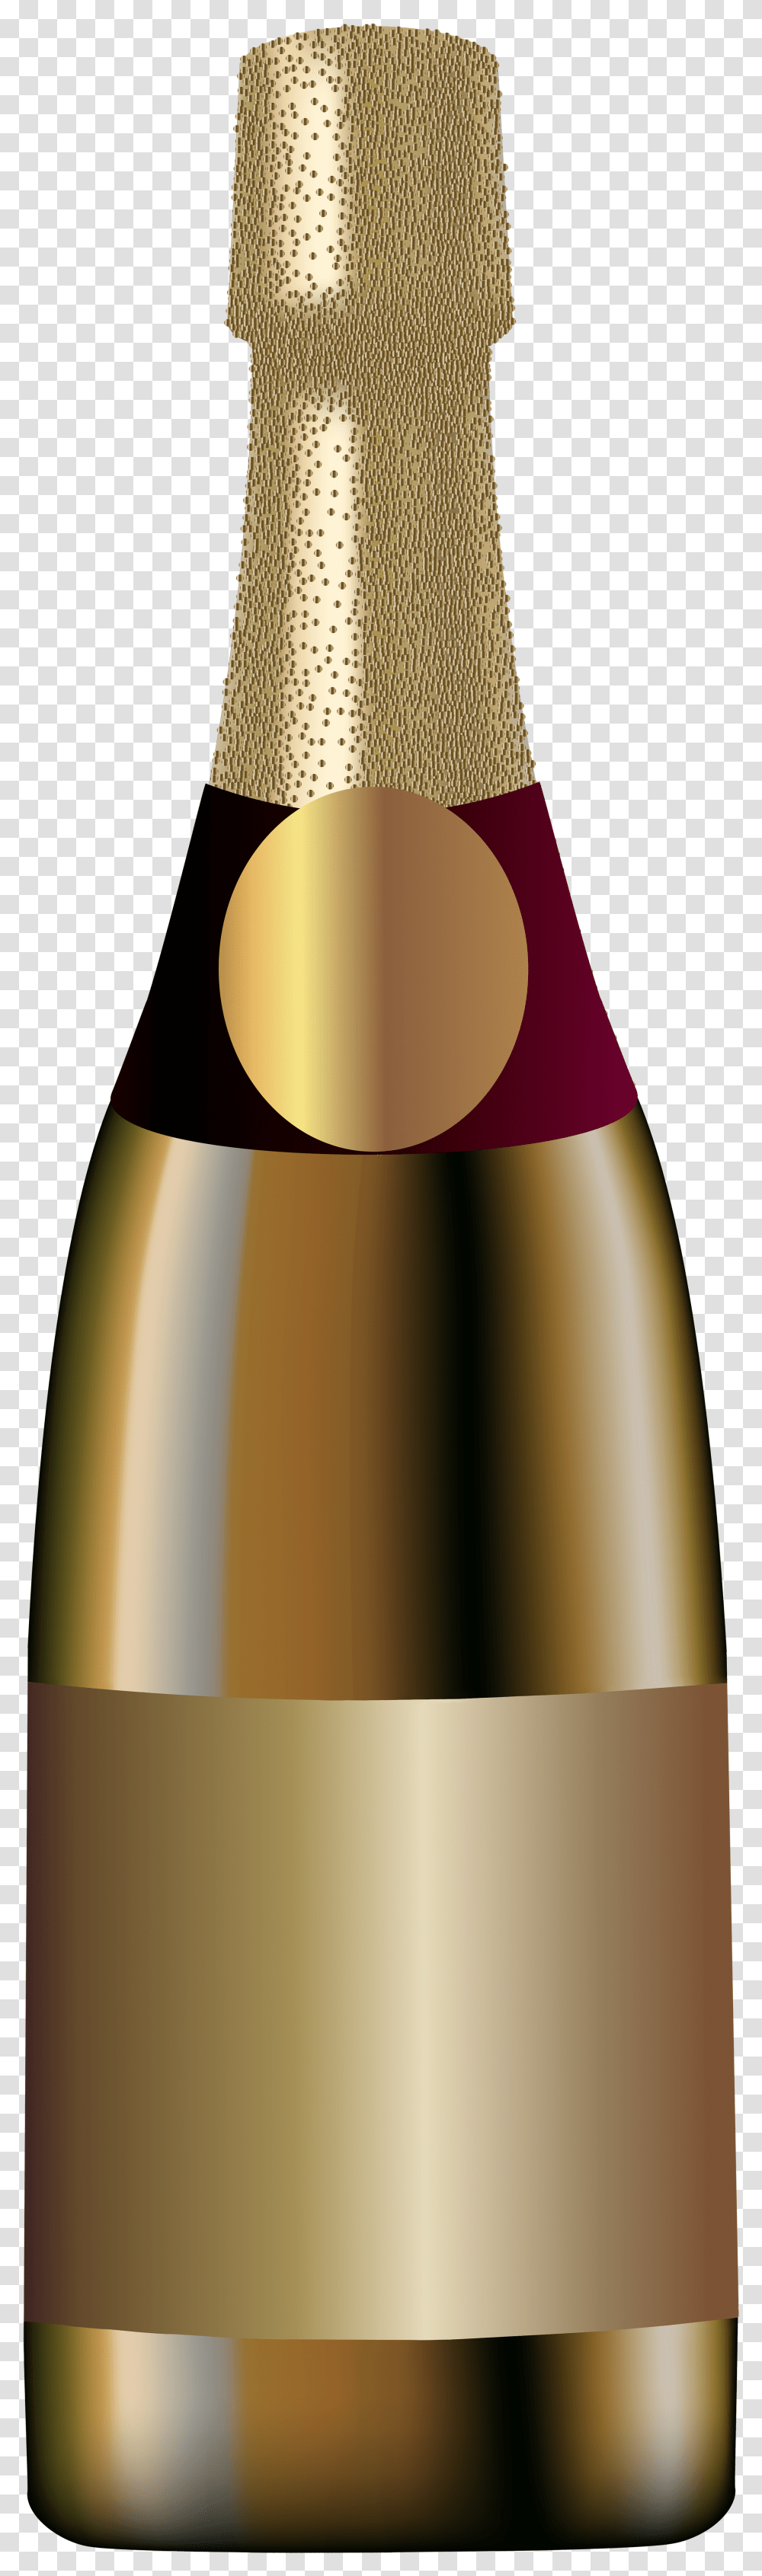 Elegant Champagne Bottle Clip Art Image Transparent Png